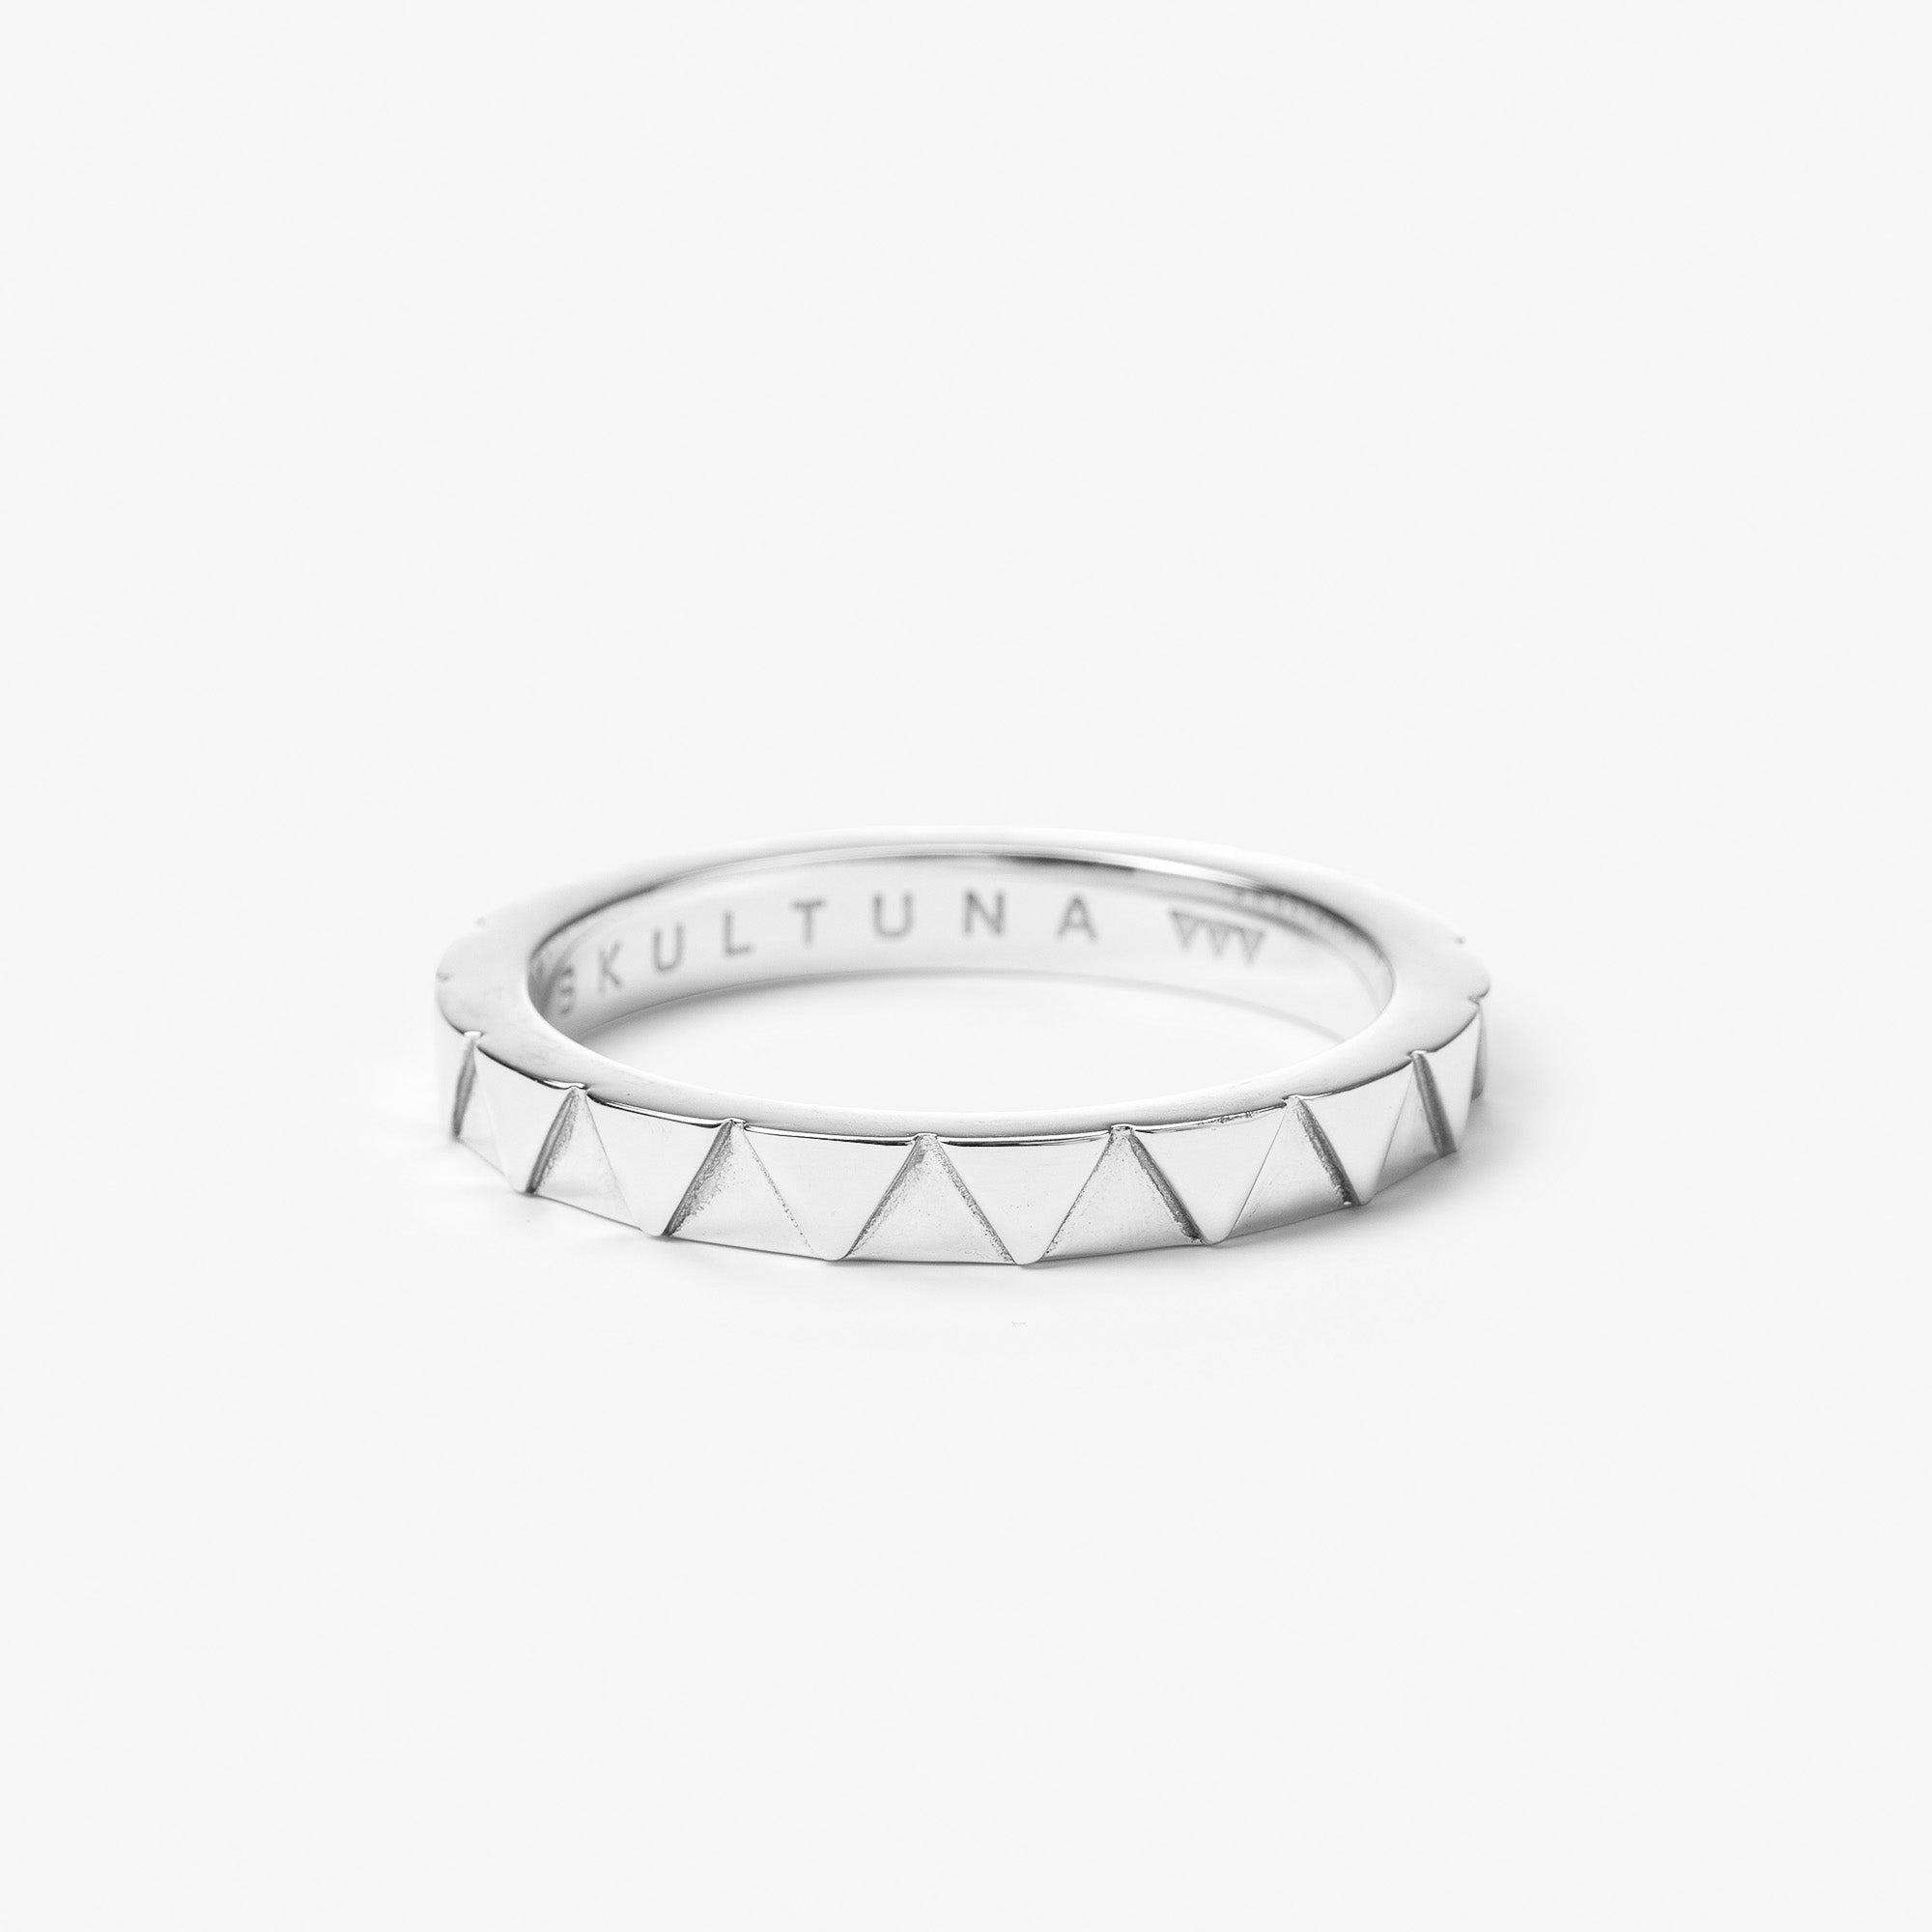 Skultuna x Get the Gallop Napkin Ring Silver